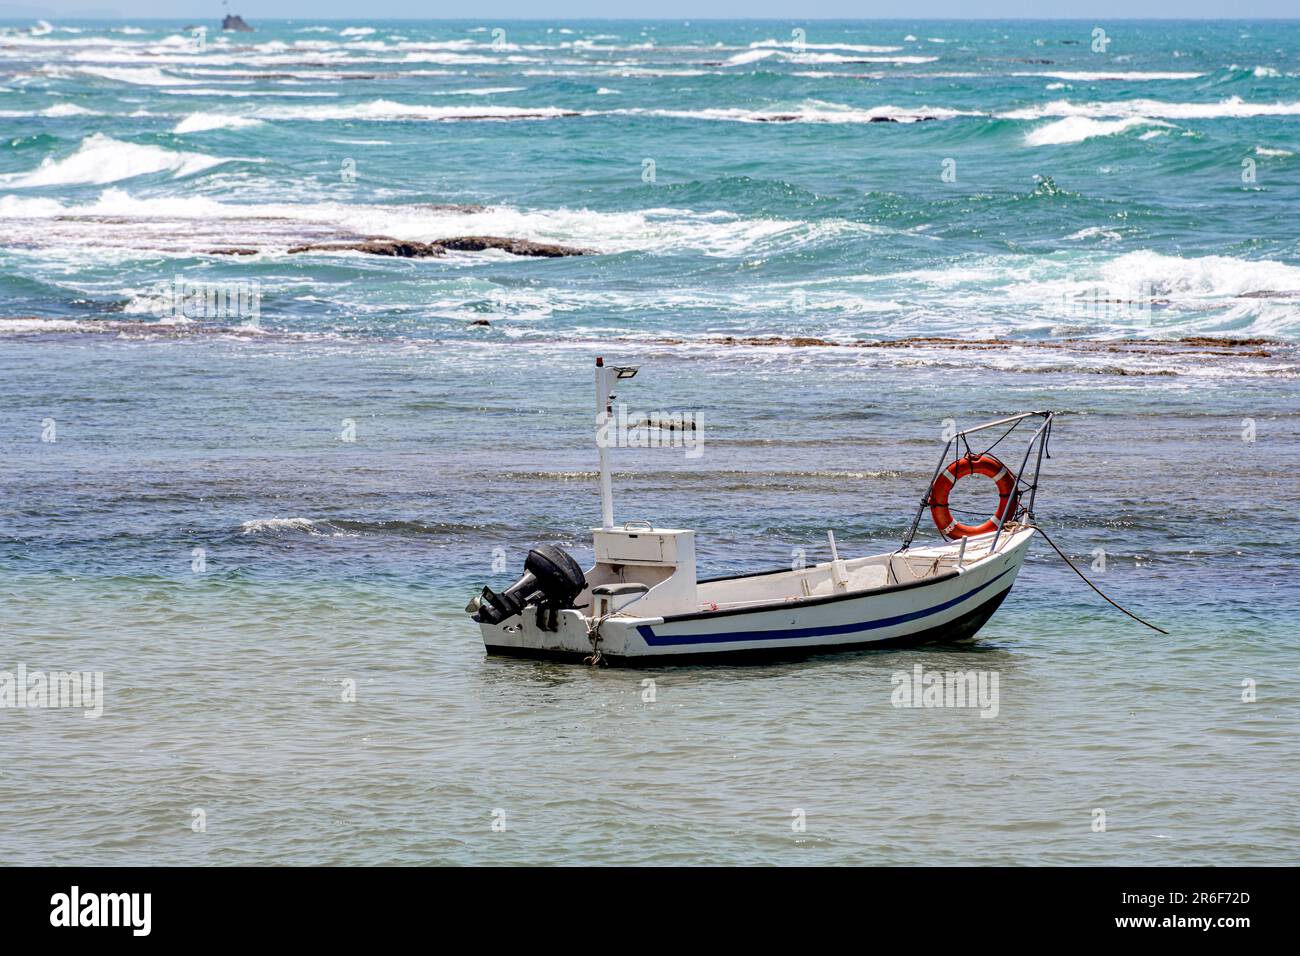 Kleines gestrandetes Fischerboot. Fotografiert in Jaffa, Israel. Bat Yam im Hintergrund Stockfoto